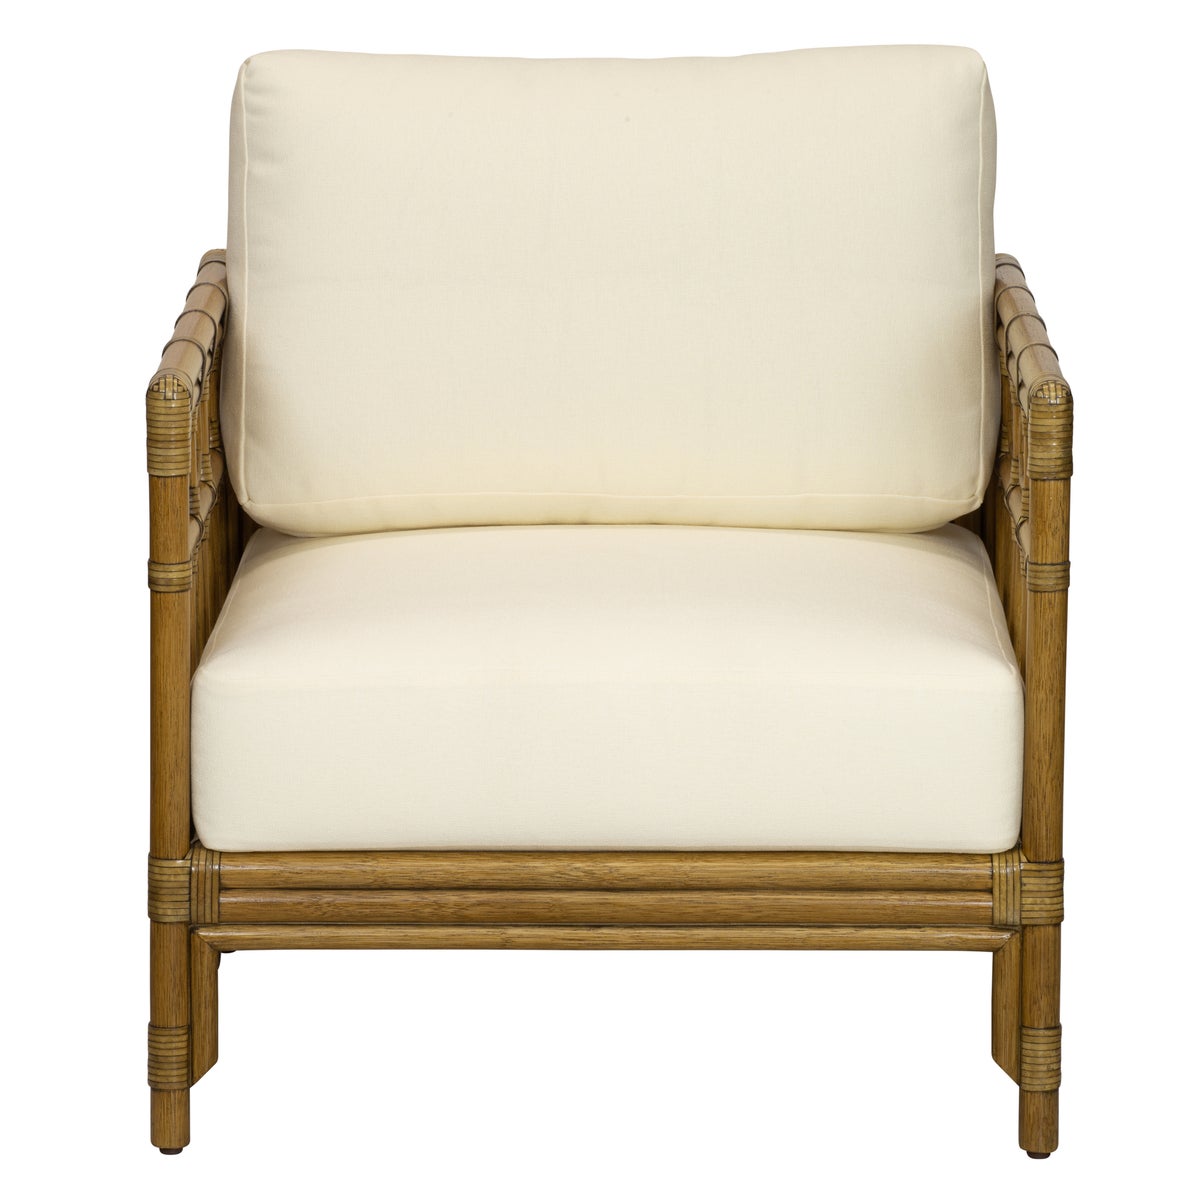 Regeant Lounge Chair in Nutmeg